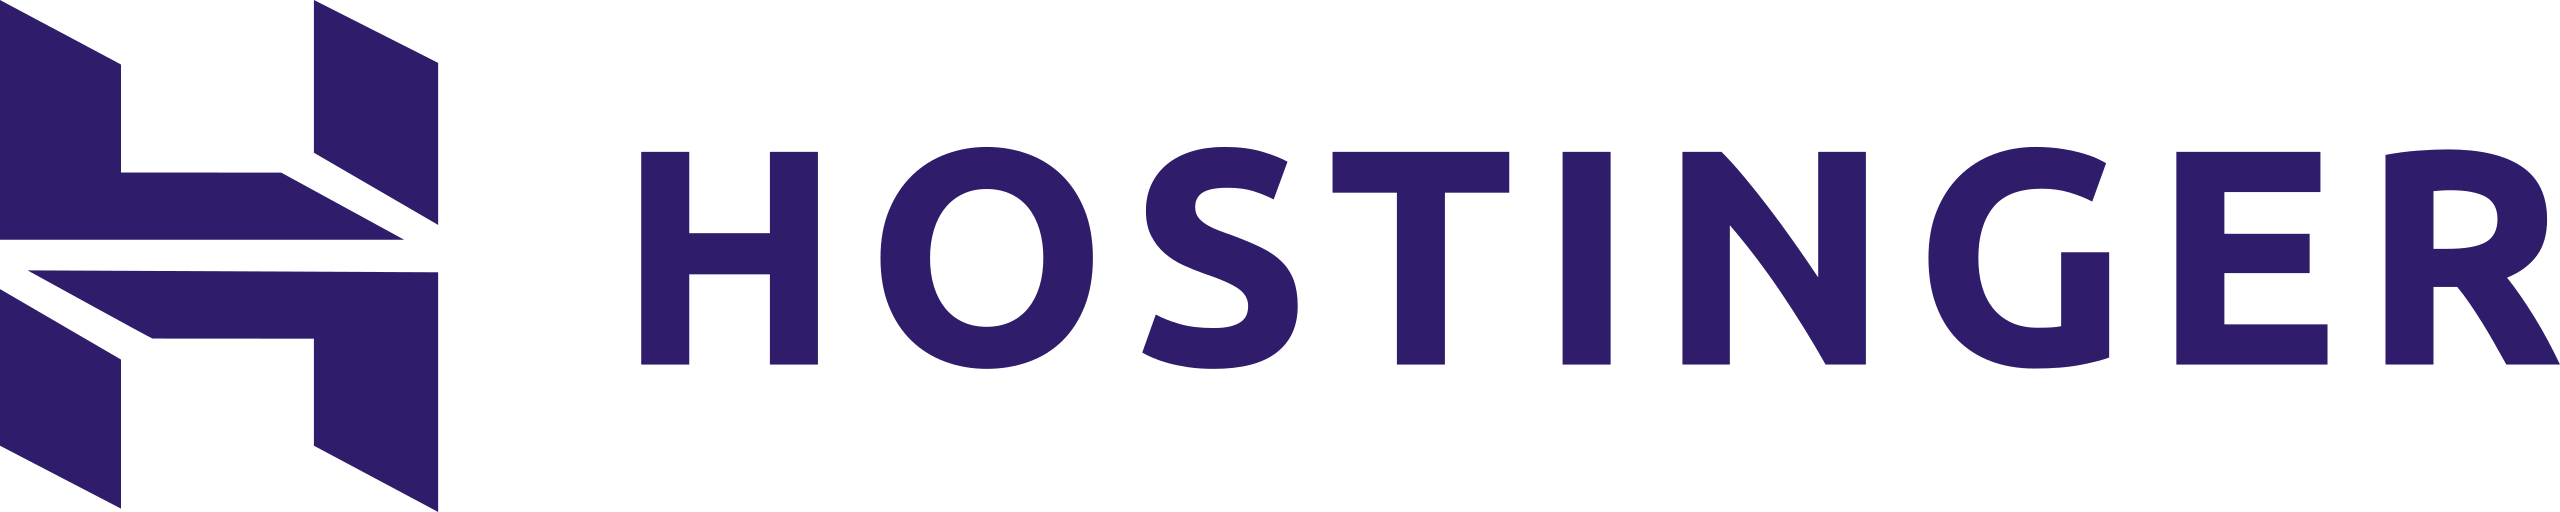 Hostinger_logo